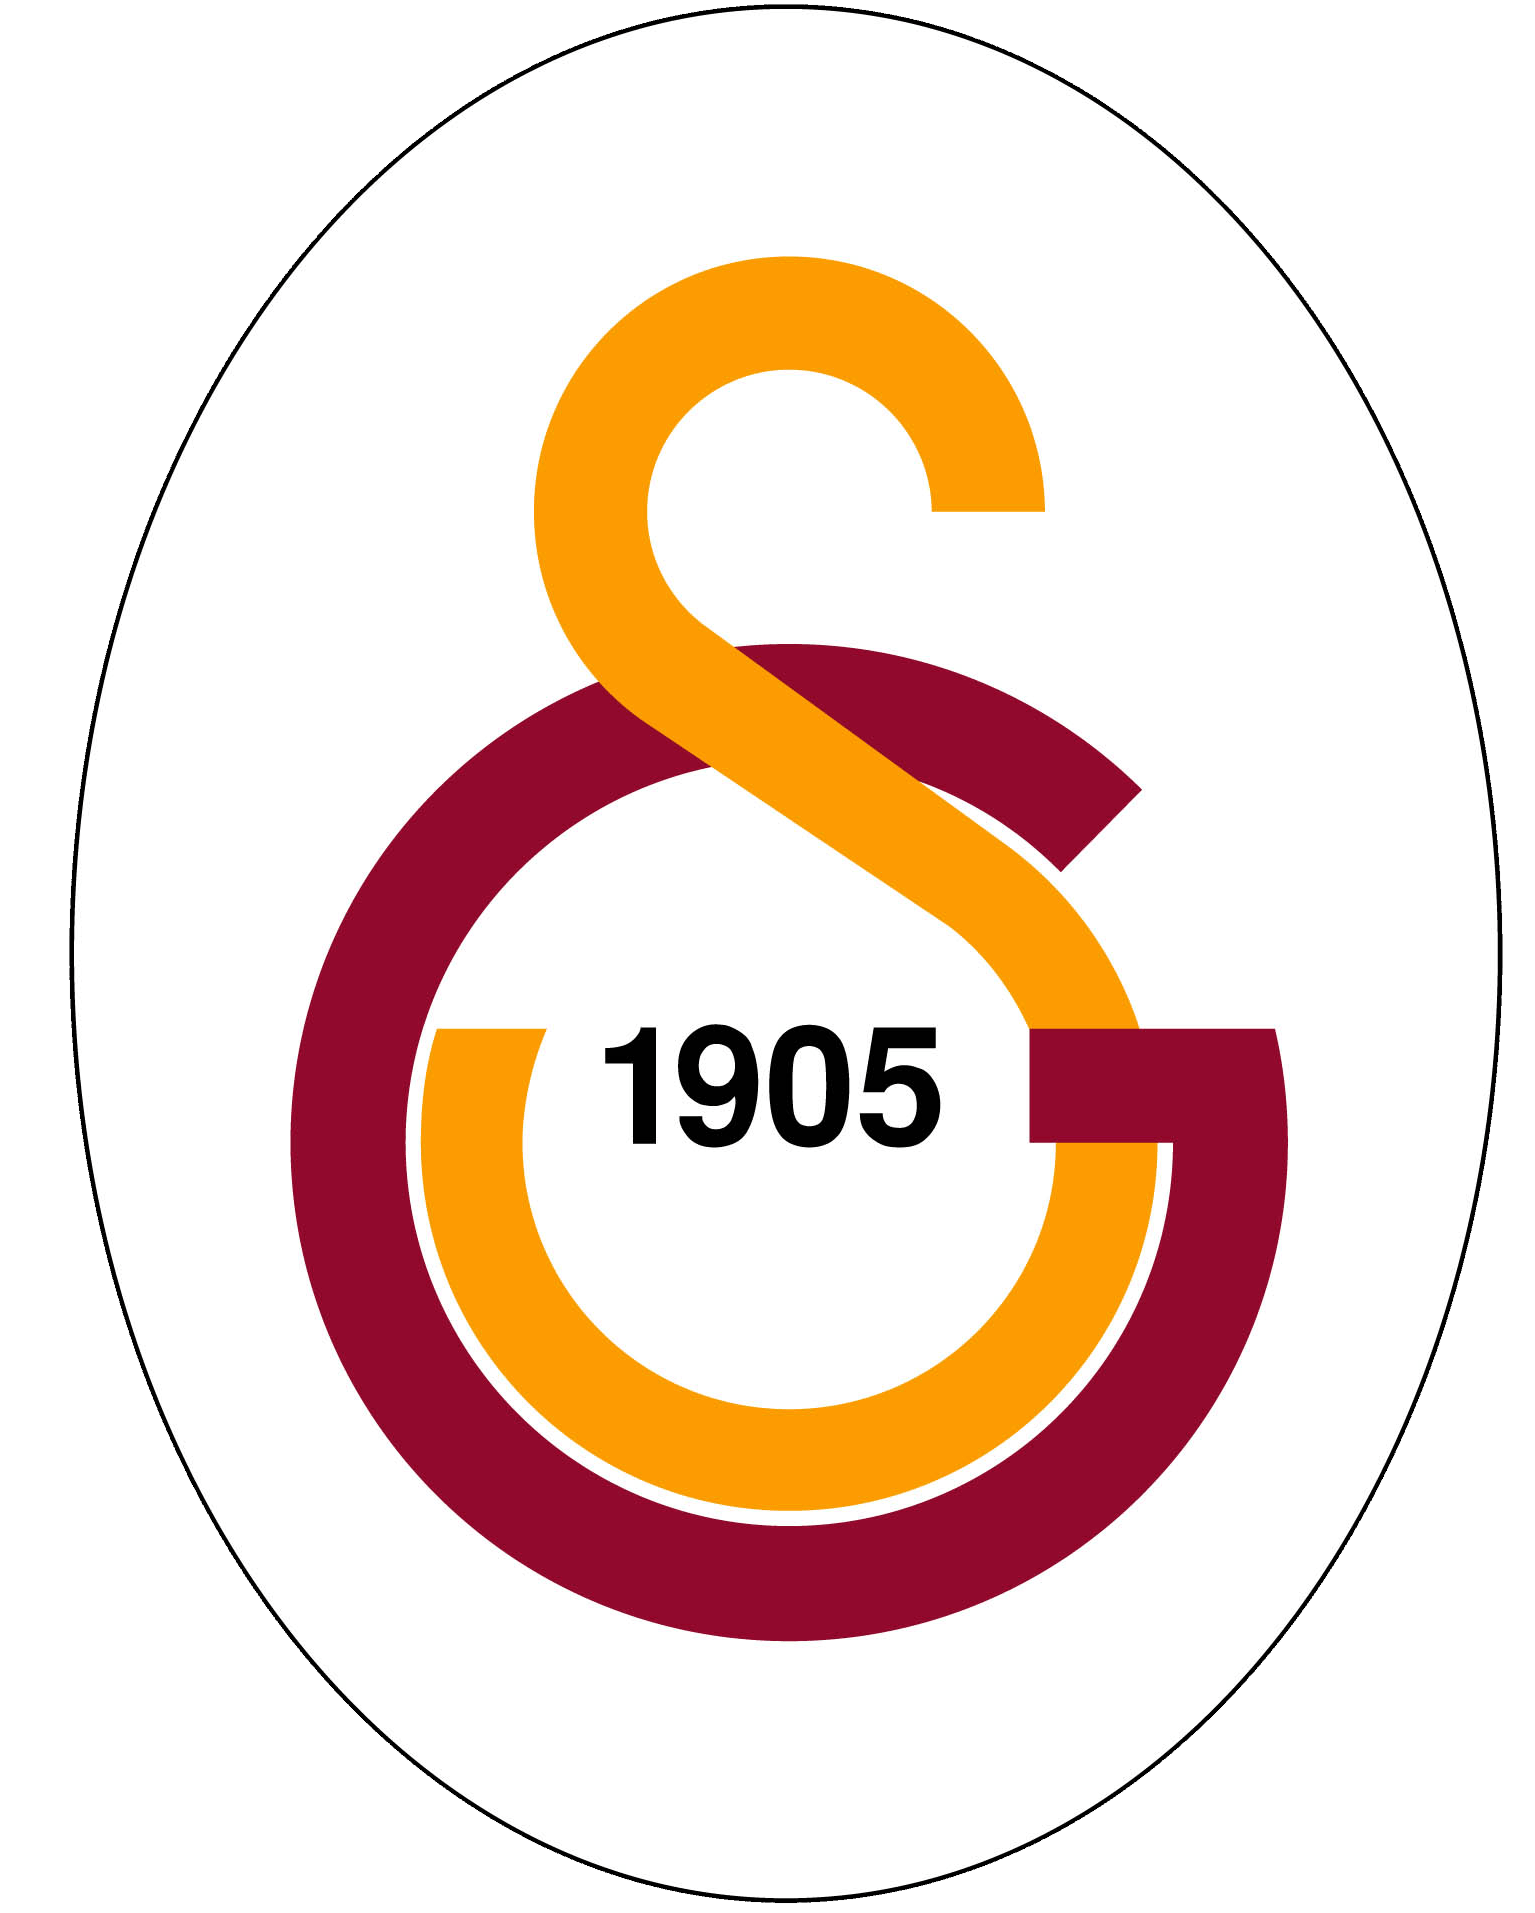 Galatasaray Logo - File:Galatasaray Sports Club Logo.png - Wikimedia Commons